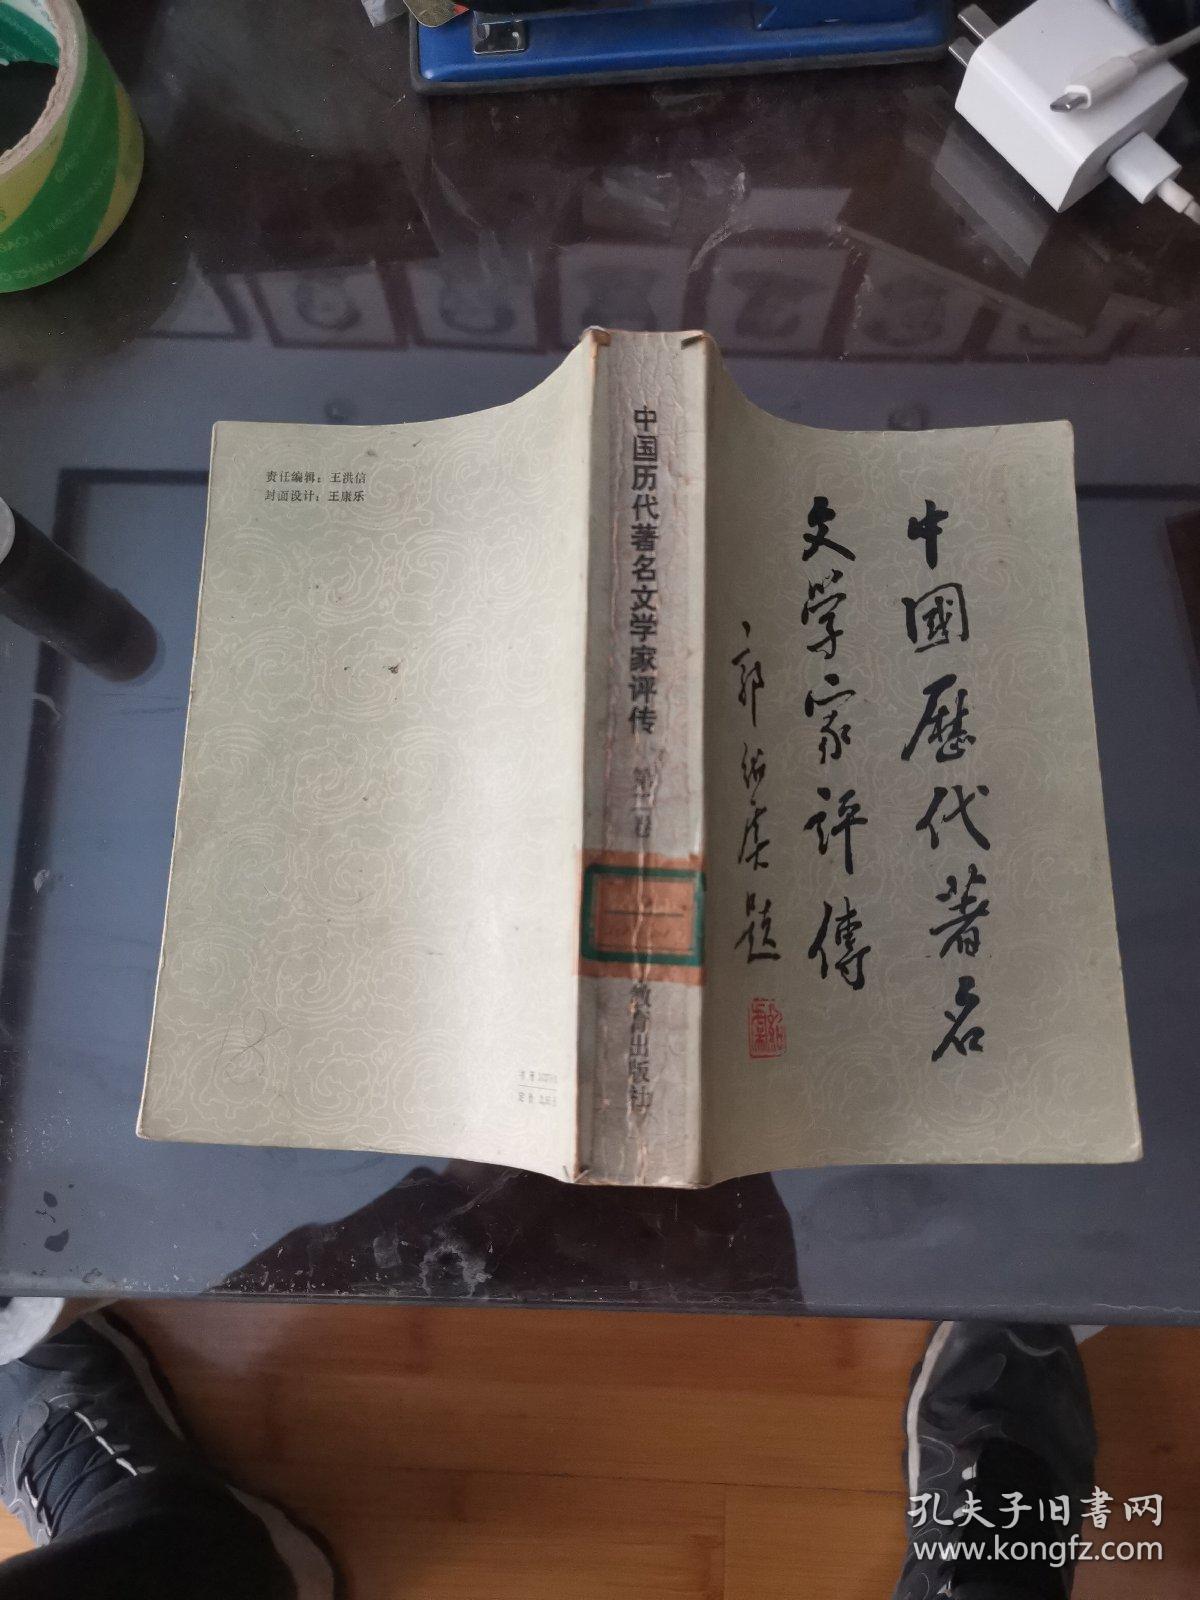 中国历代著名文学家评传 第二卷